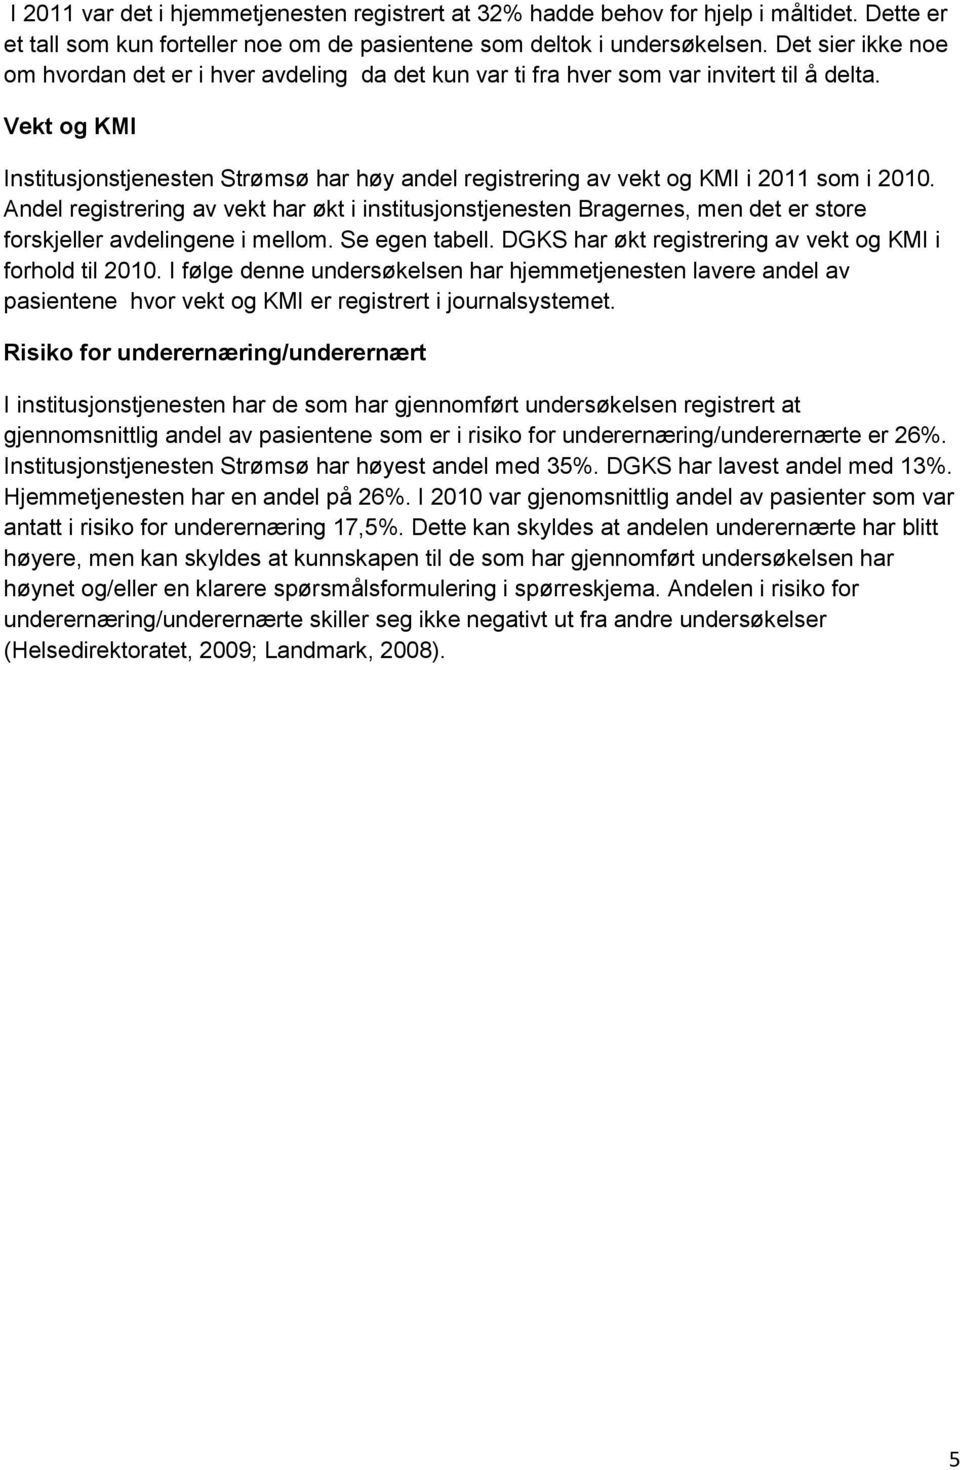 Vekt og KMI Institusjonstjenesten Strømsø har høy andel registrering av vekt og KMI i 2011 som i 2010.